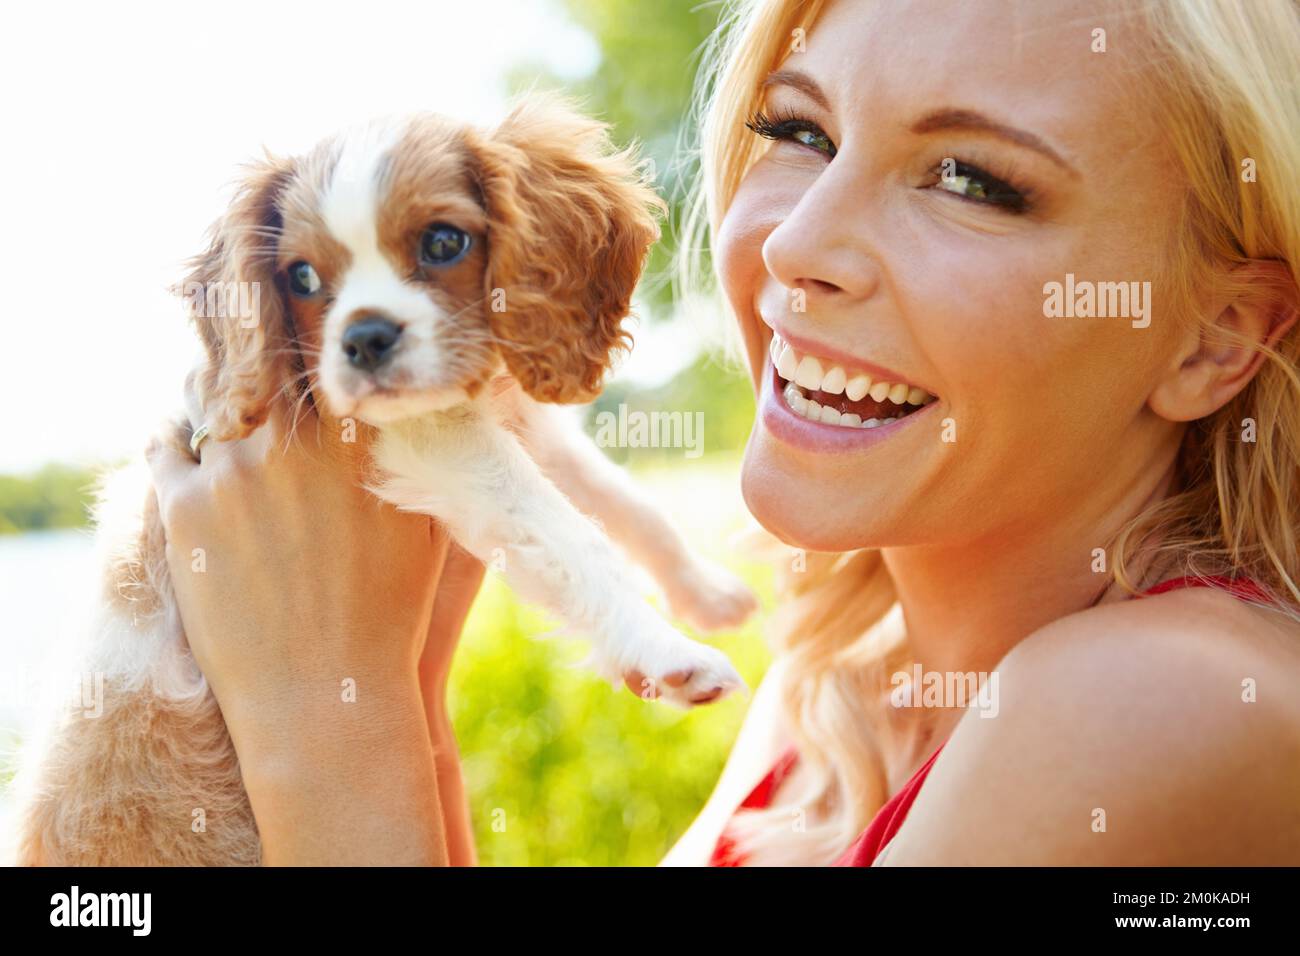 Trop mignon pour les mots. Portrait d'une belle blonde heureuse tenant un chiot adorable à l'extérieur. Banque D'Images